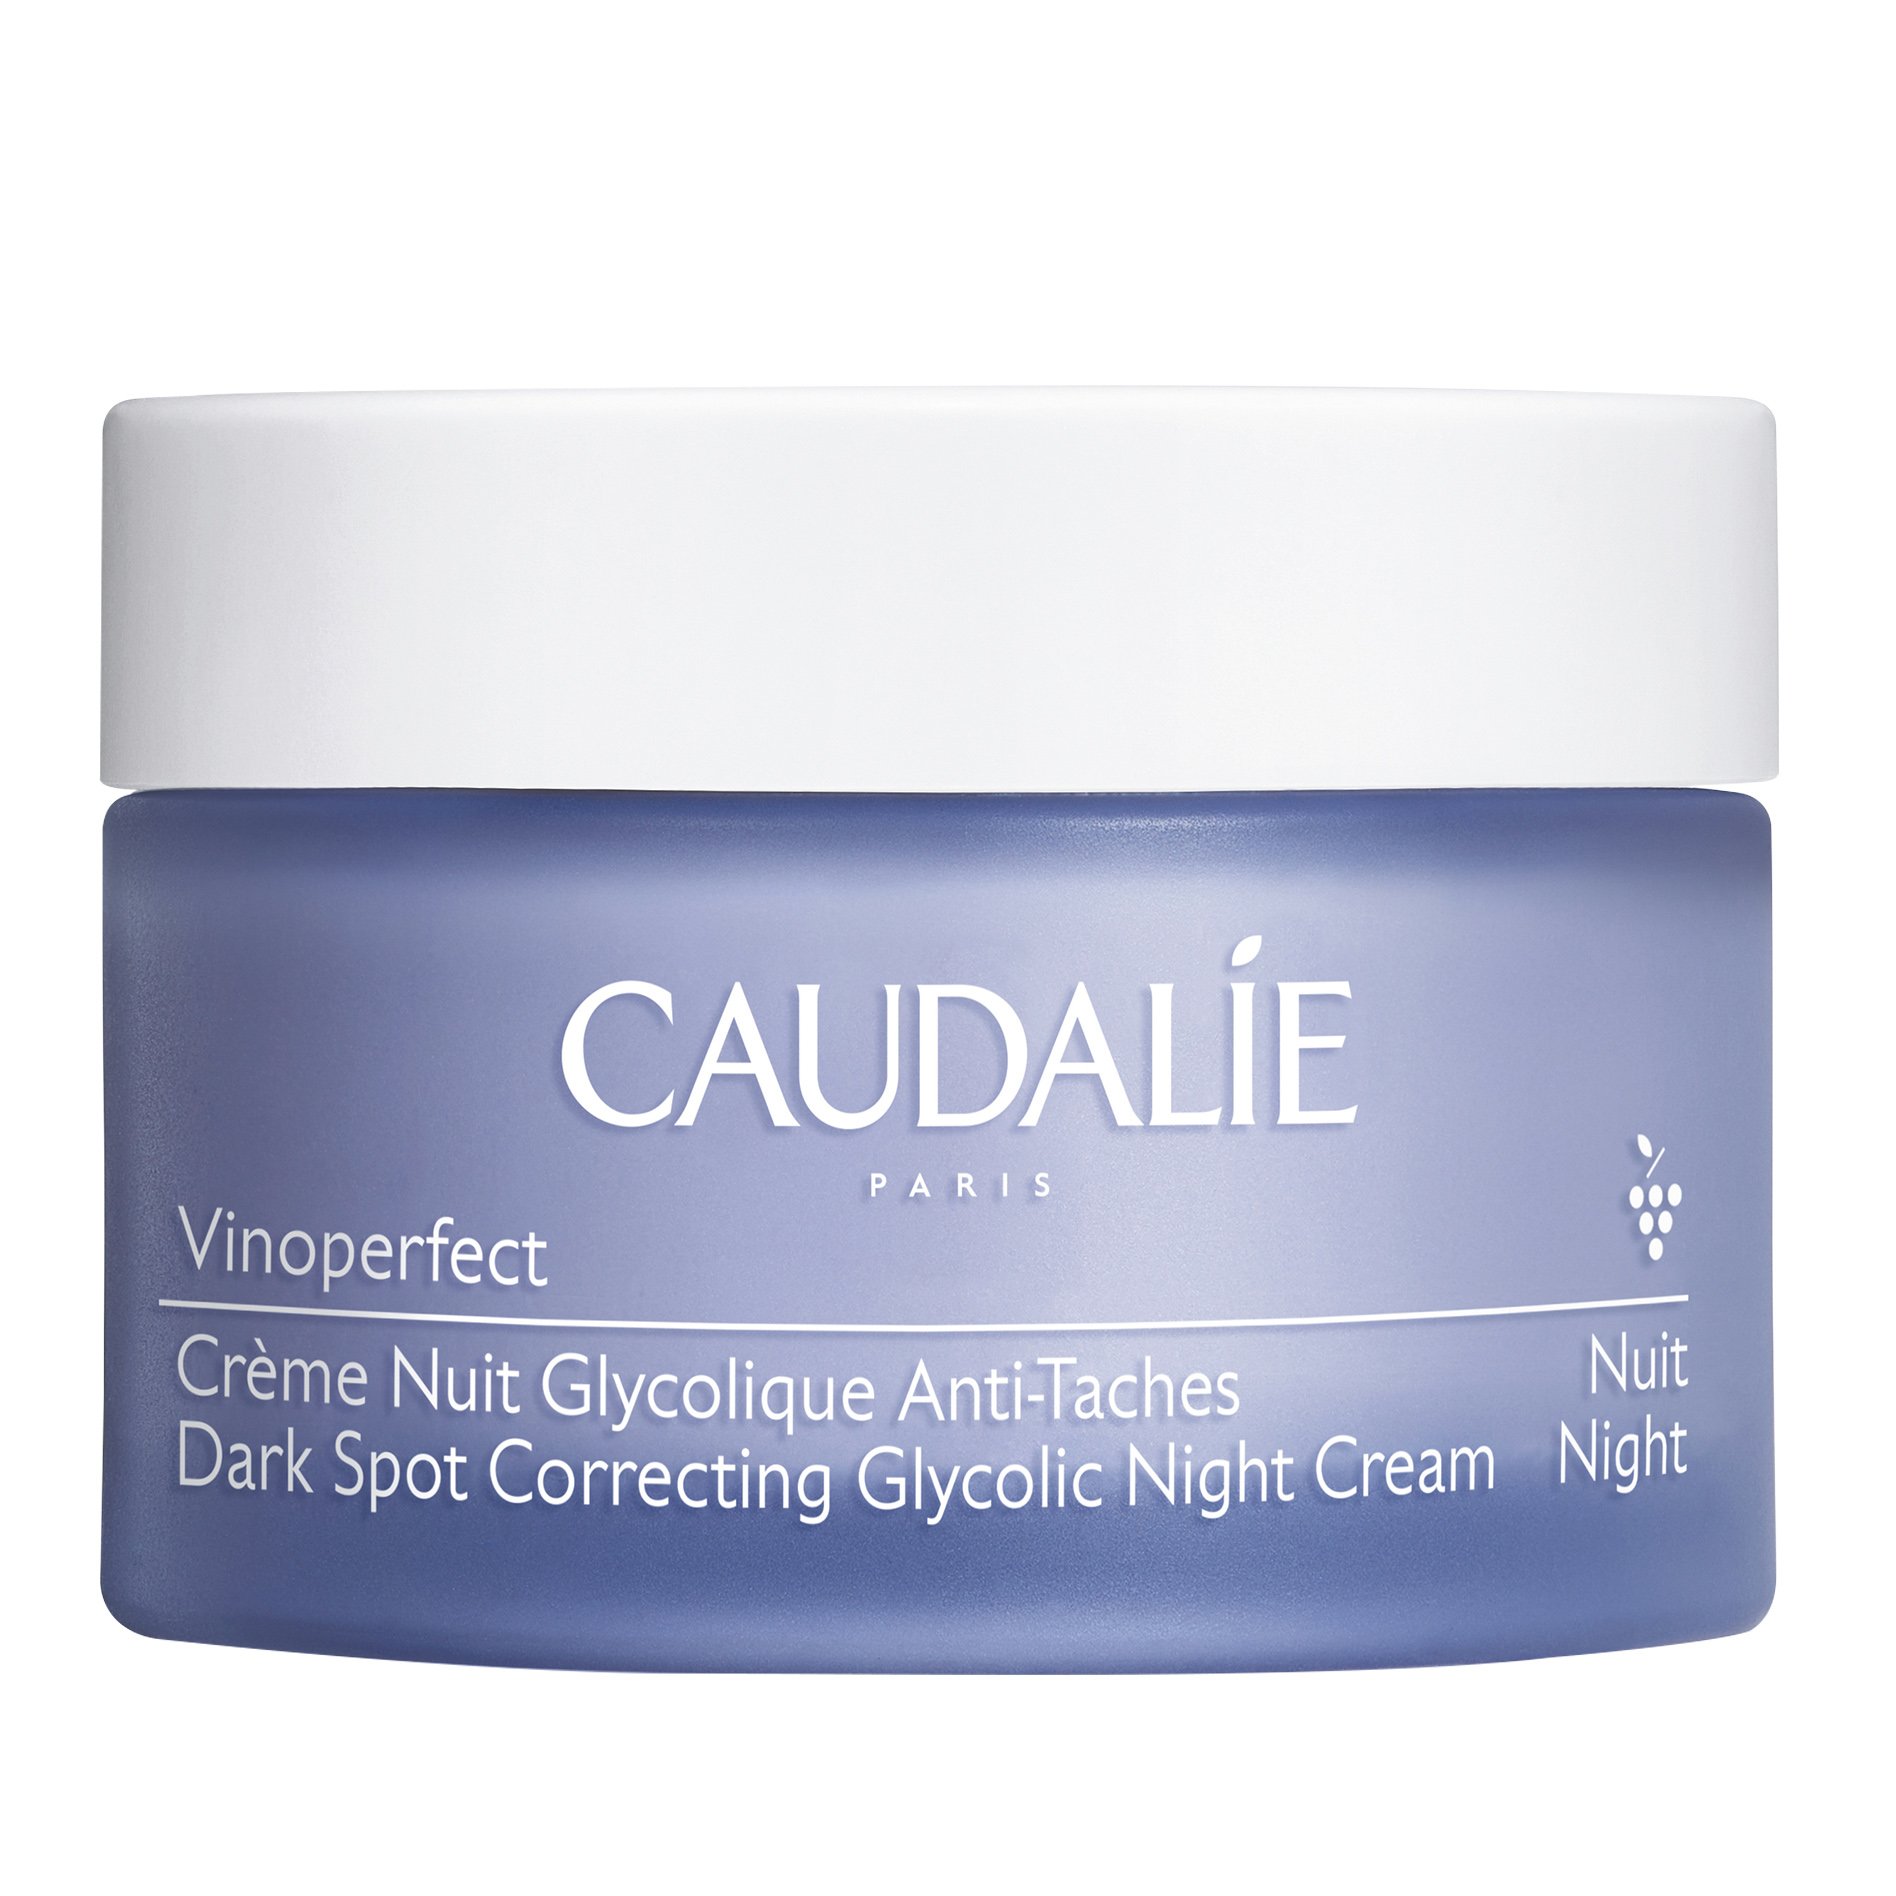 Εικόνα από Caudalie Vinoperfect Dark Spot Correcting Glycolic Night Cream Κρέμα Νύχτας Εντατικής Διόρθωσης των Κηλίδων της Επιδερμίδας 50ml